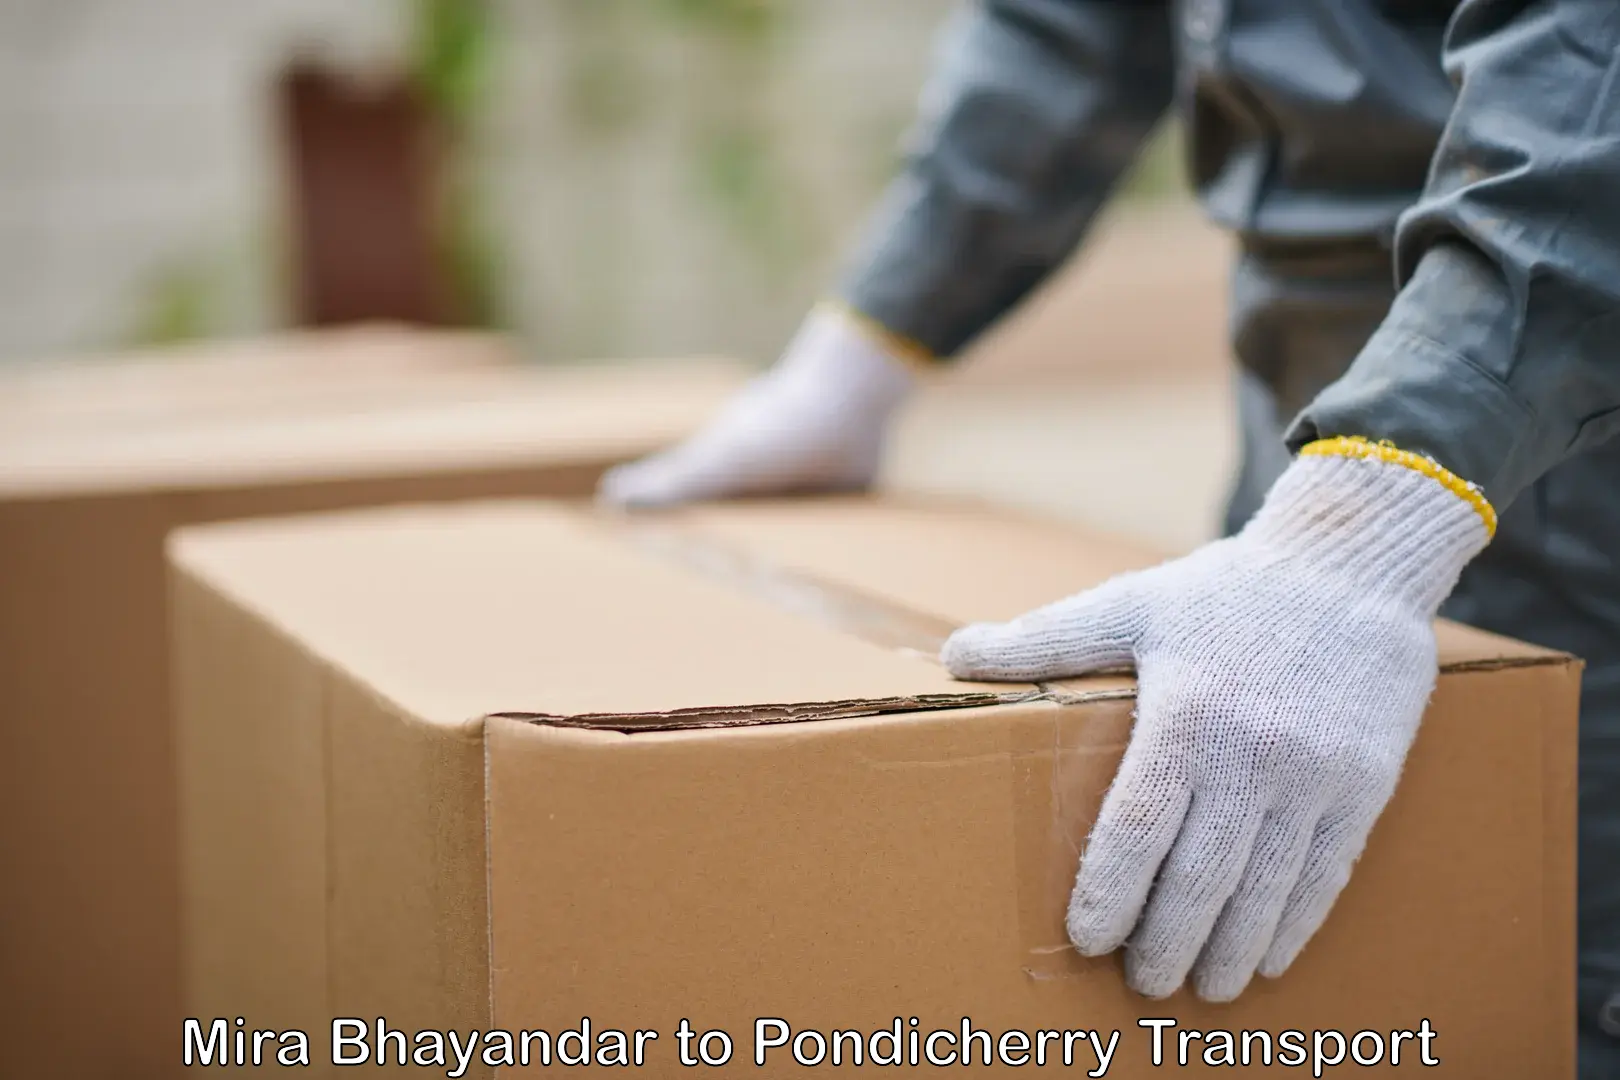 Online transport service Mira Bhayandar to Pondicherry